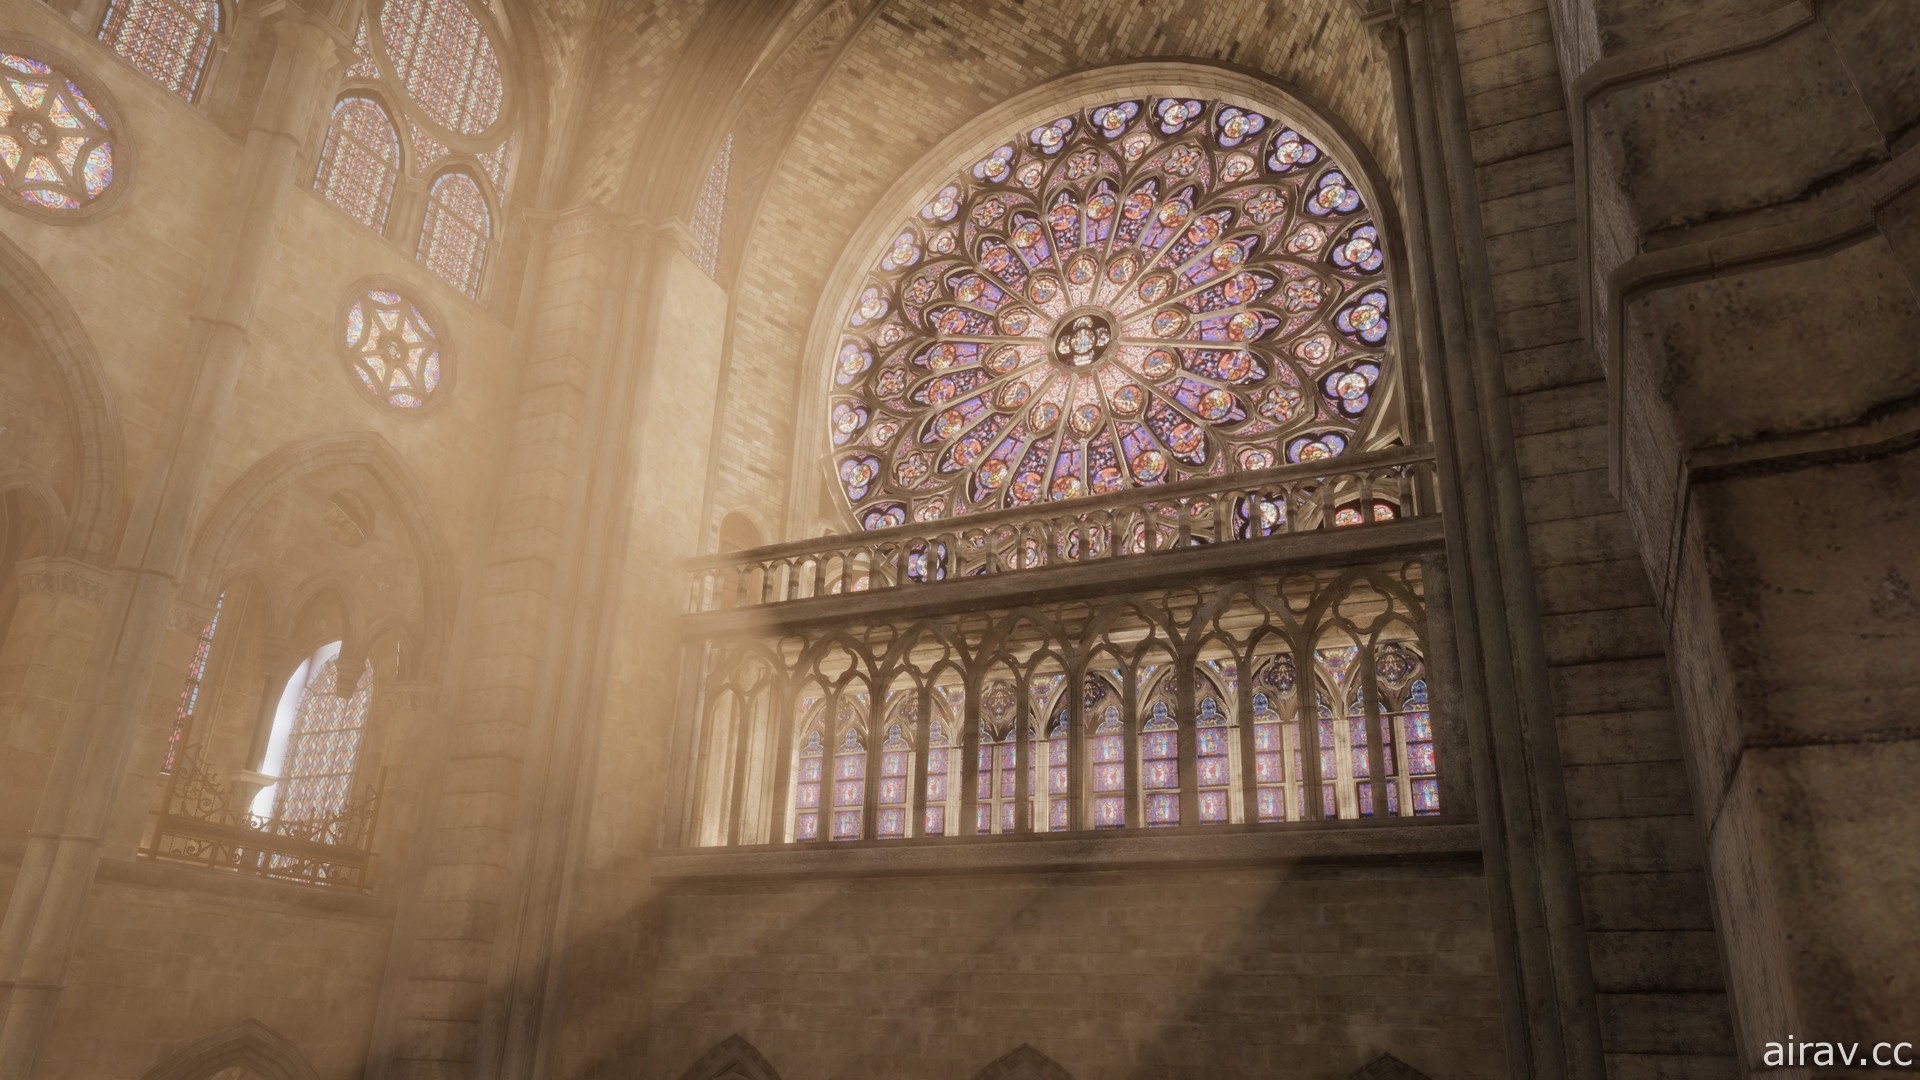 Ubisoft 今日免费推出《巴黎圣母院：时光倒流之旅》 让世人重温经典建筑风貌